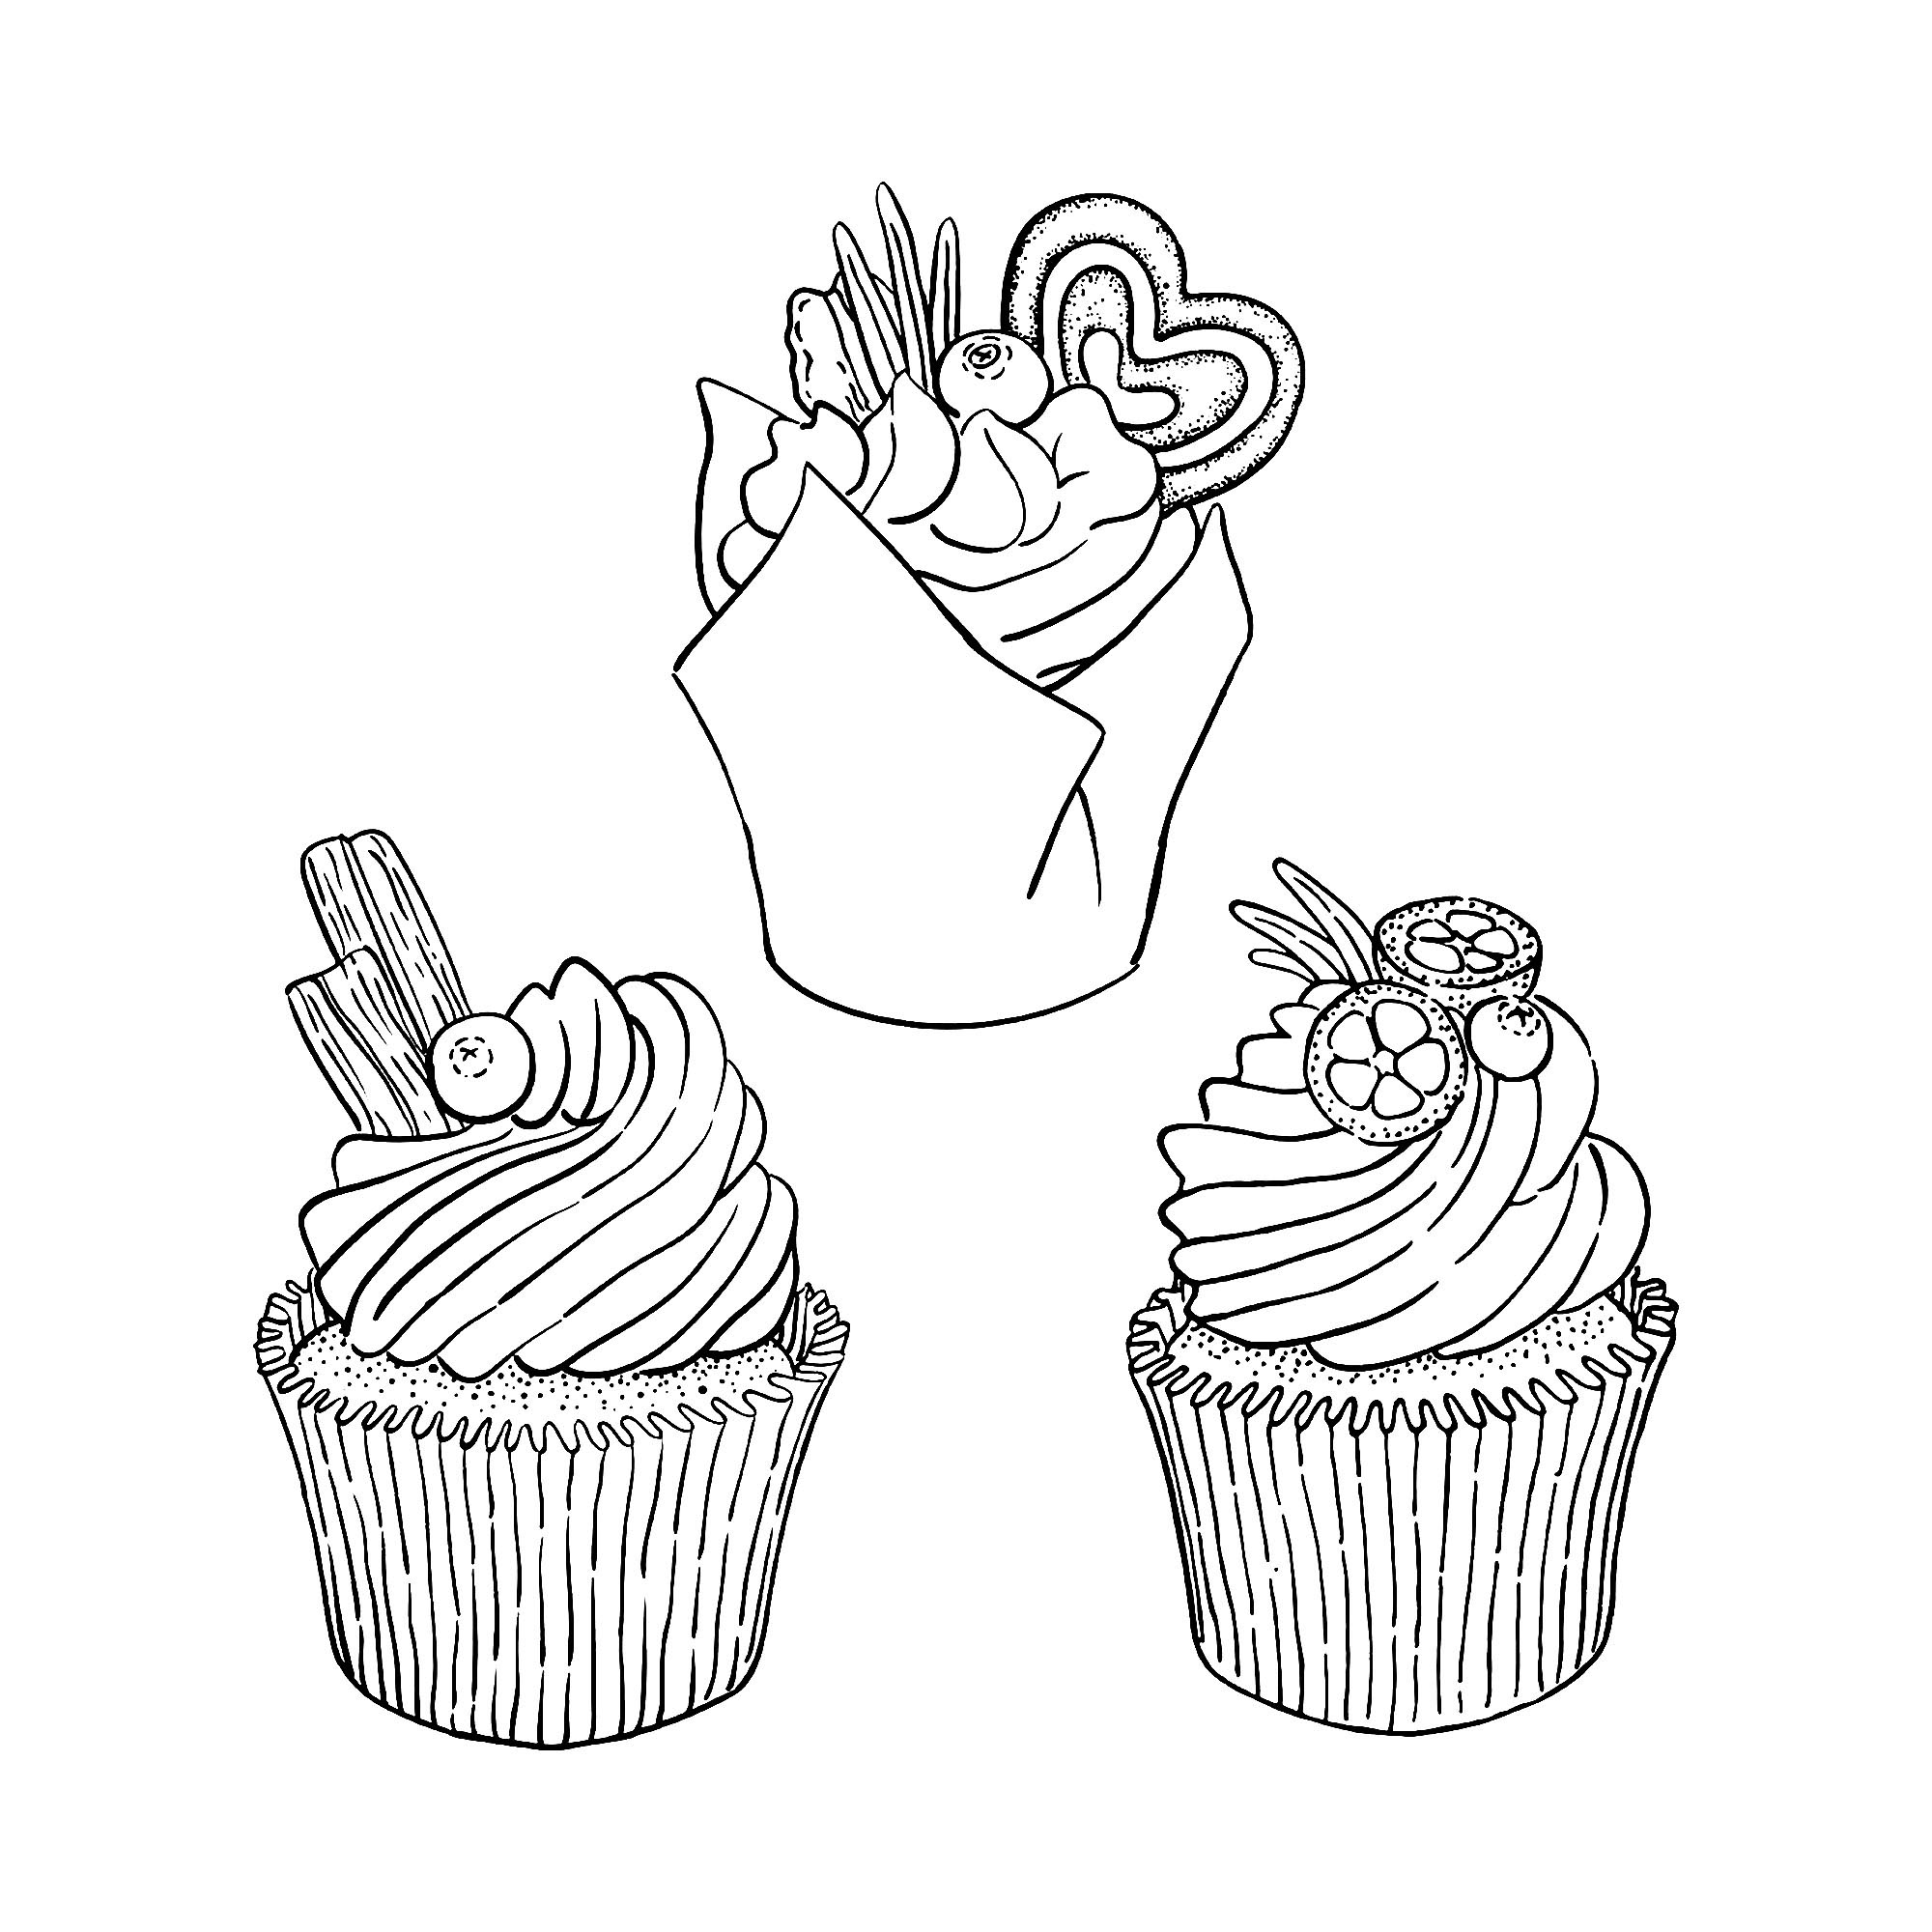 trois cupcakes simples  coloriage cupcakes et gateaux  coloriages pour enfants